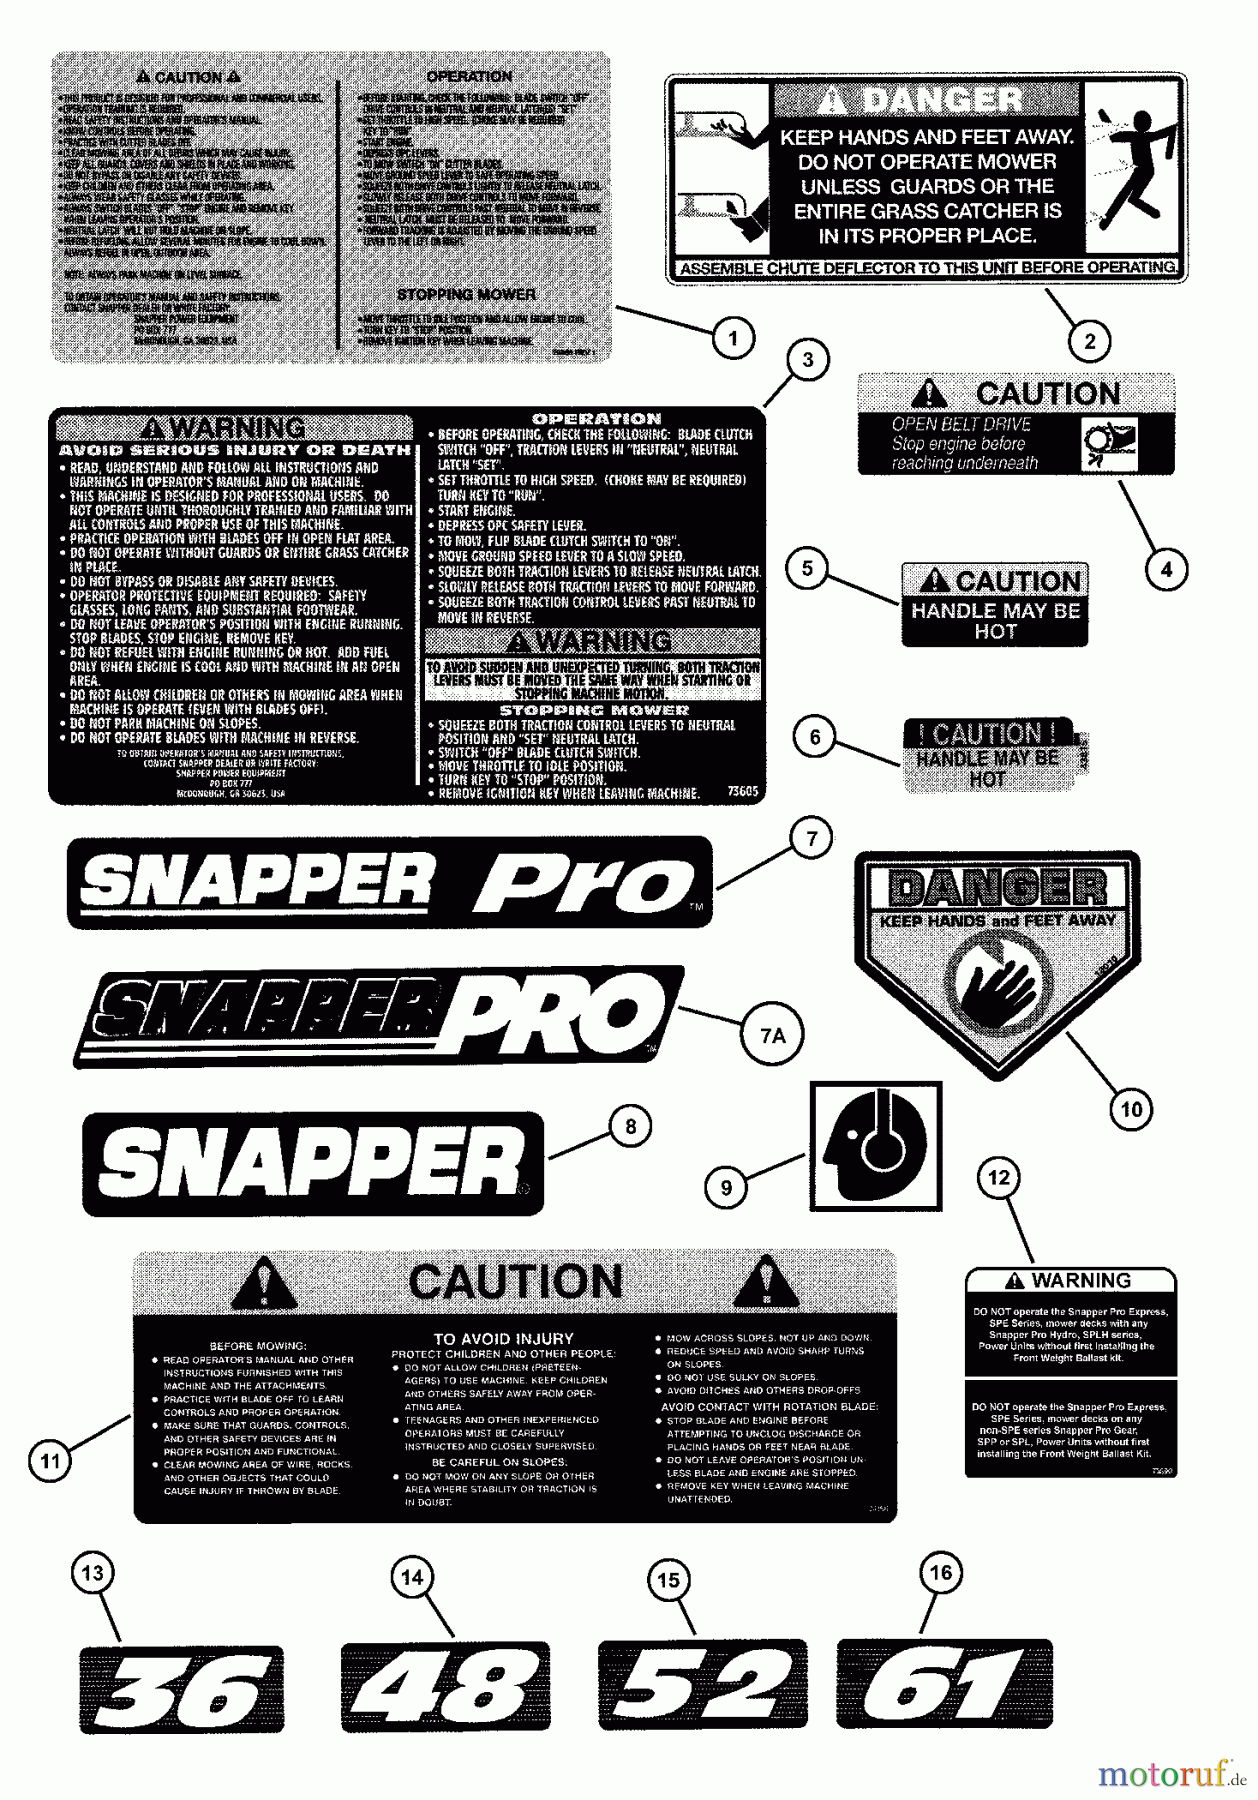  Snapper Mähdecks SP360 - Snapper 36